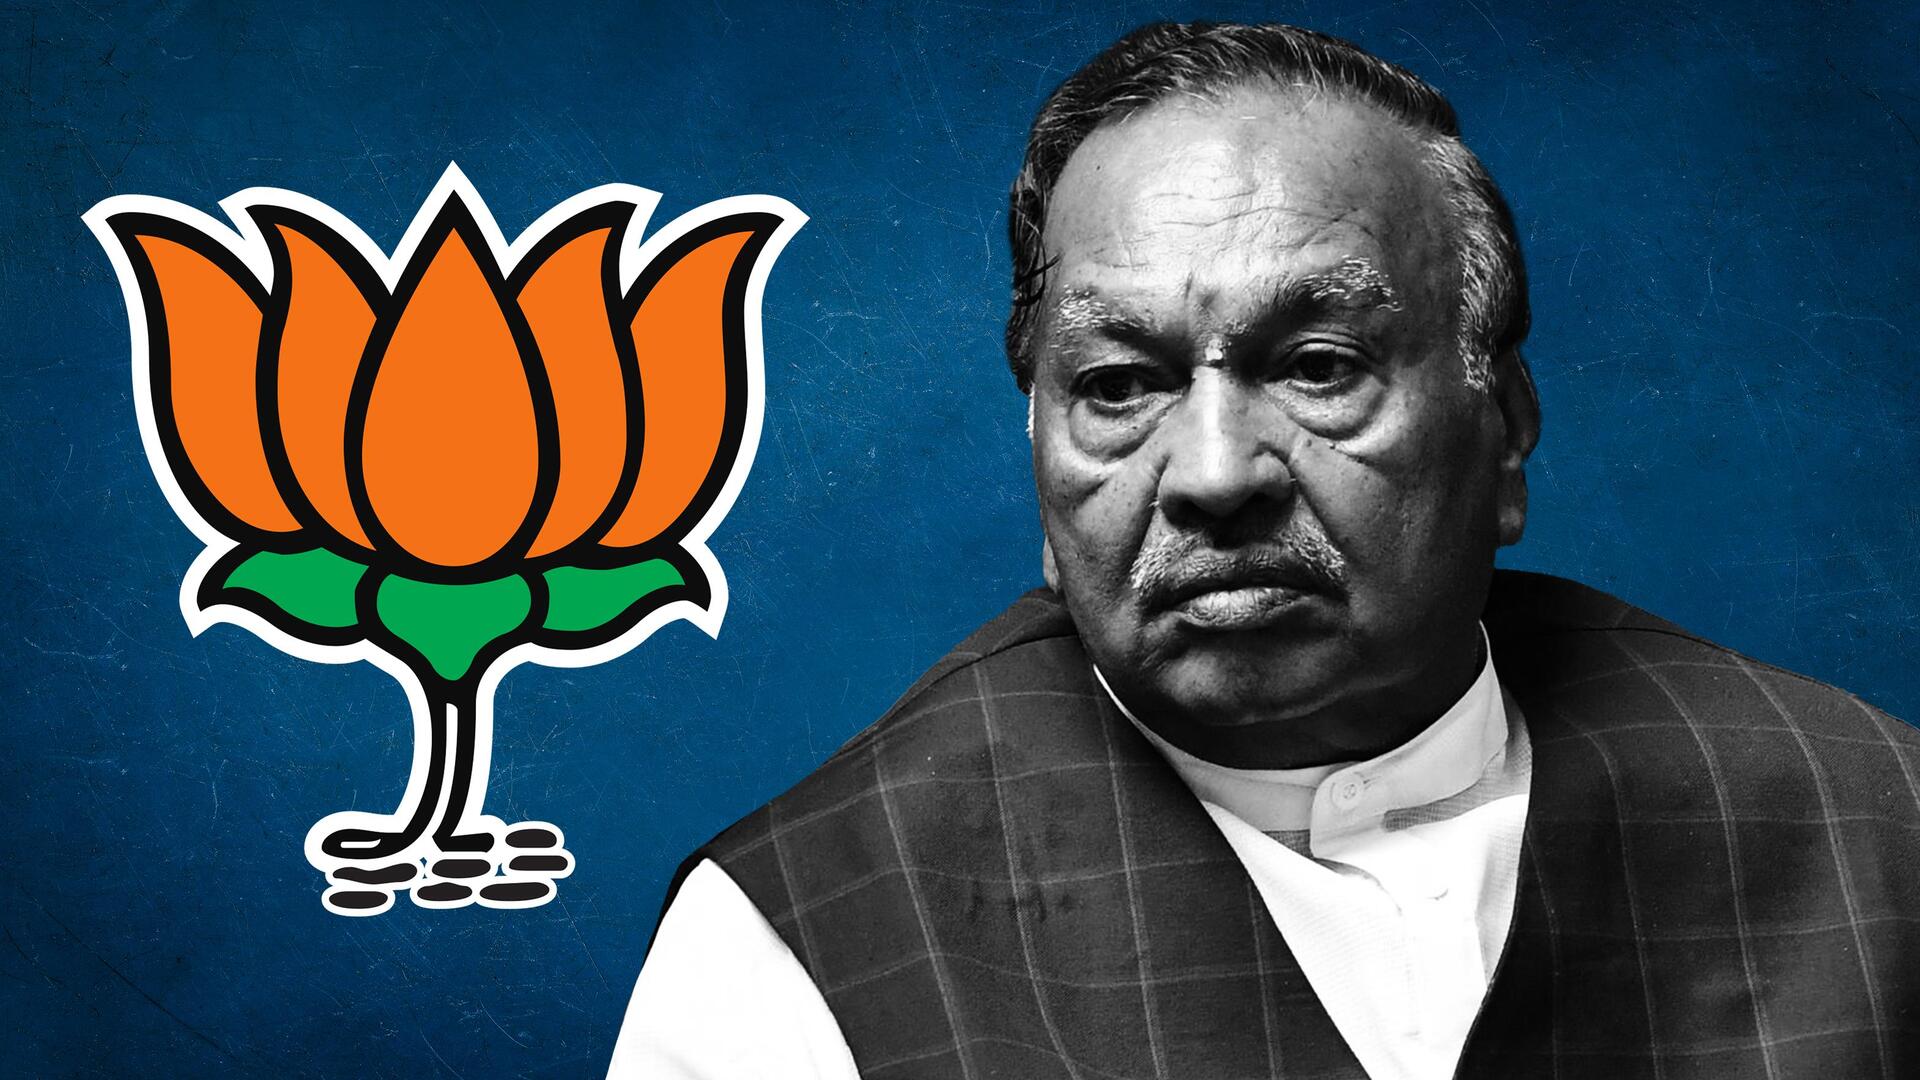 कर्नाटक में भाजपा को बड़ा झटका, वरिष्ठ नेता केएस ईश्वरप्पा ने चुनावी राजनीति छोड़ी